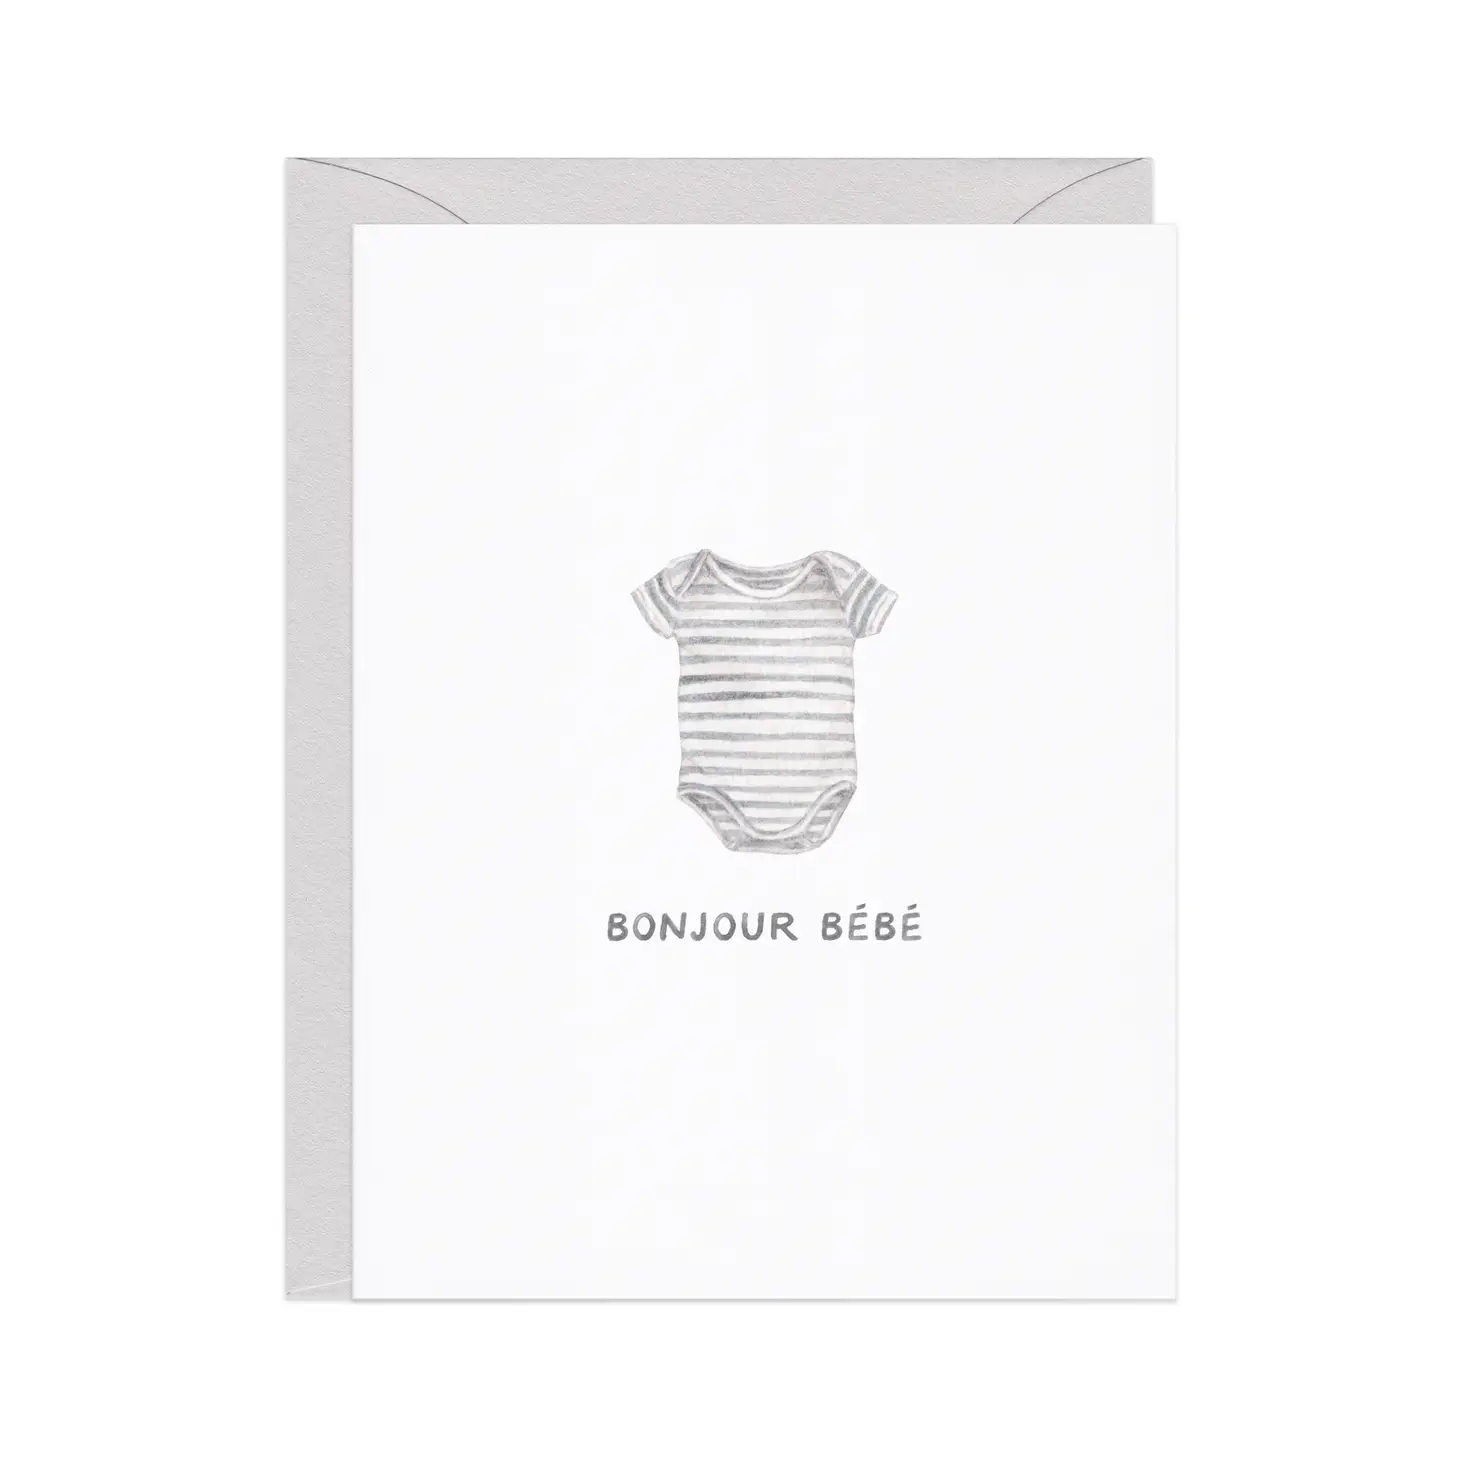 Card, Bonjour Bebe (New Baby) - Danshire Market and Design 